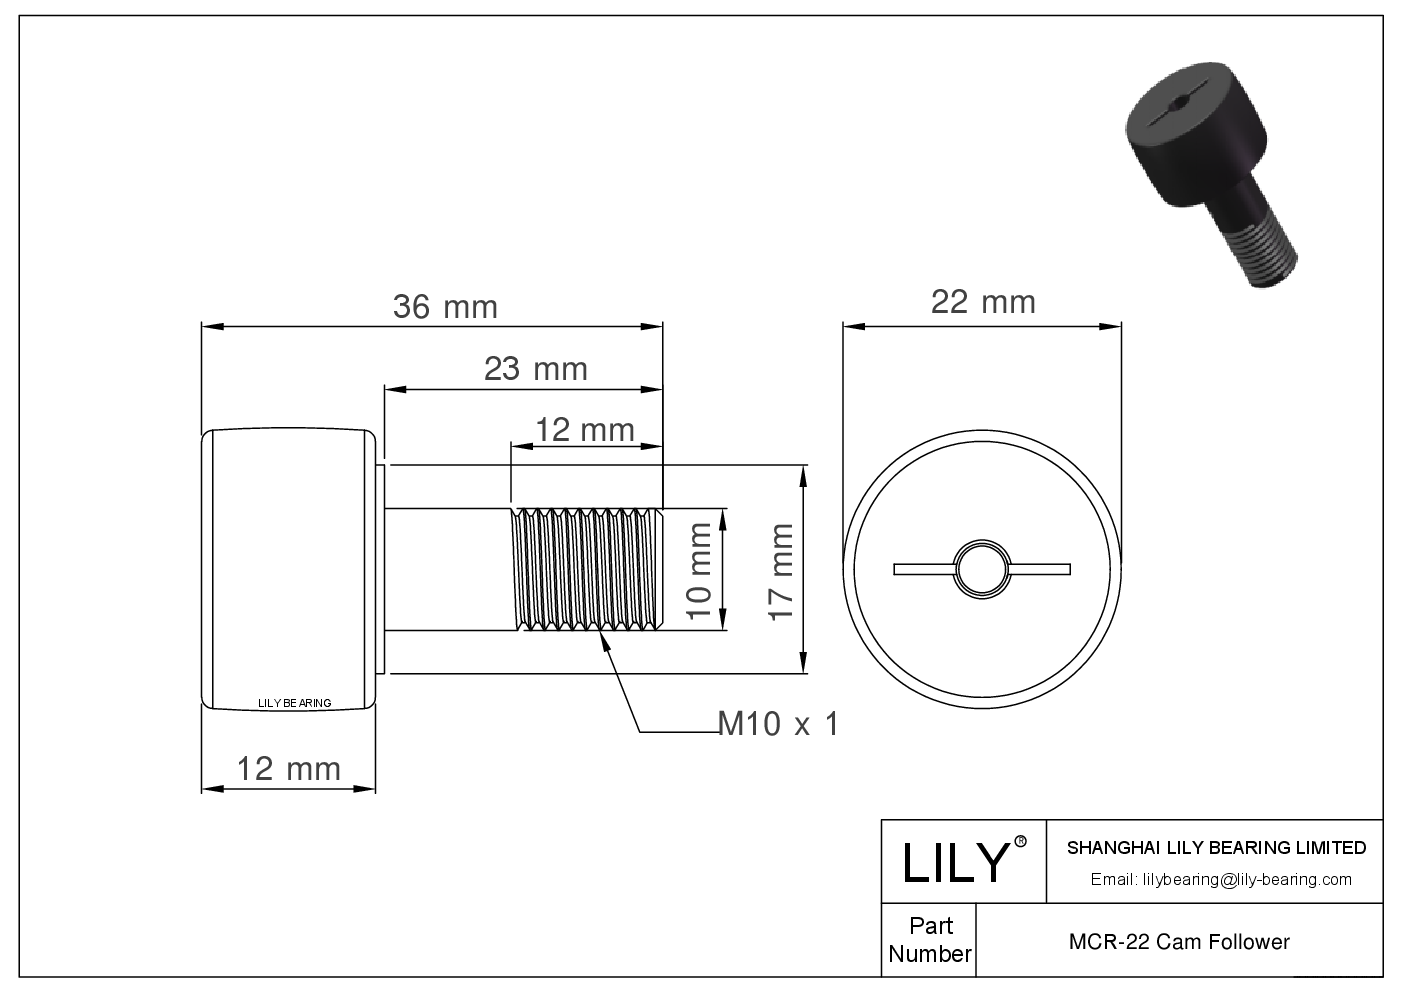 MCR-22 Stud Style Metric Cam Followers CAD图形